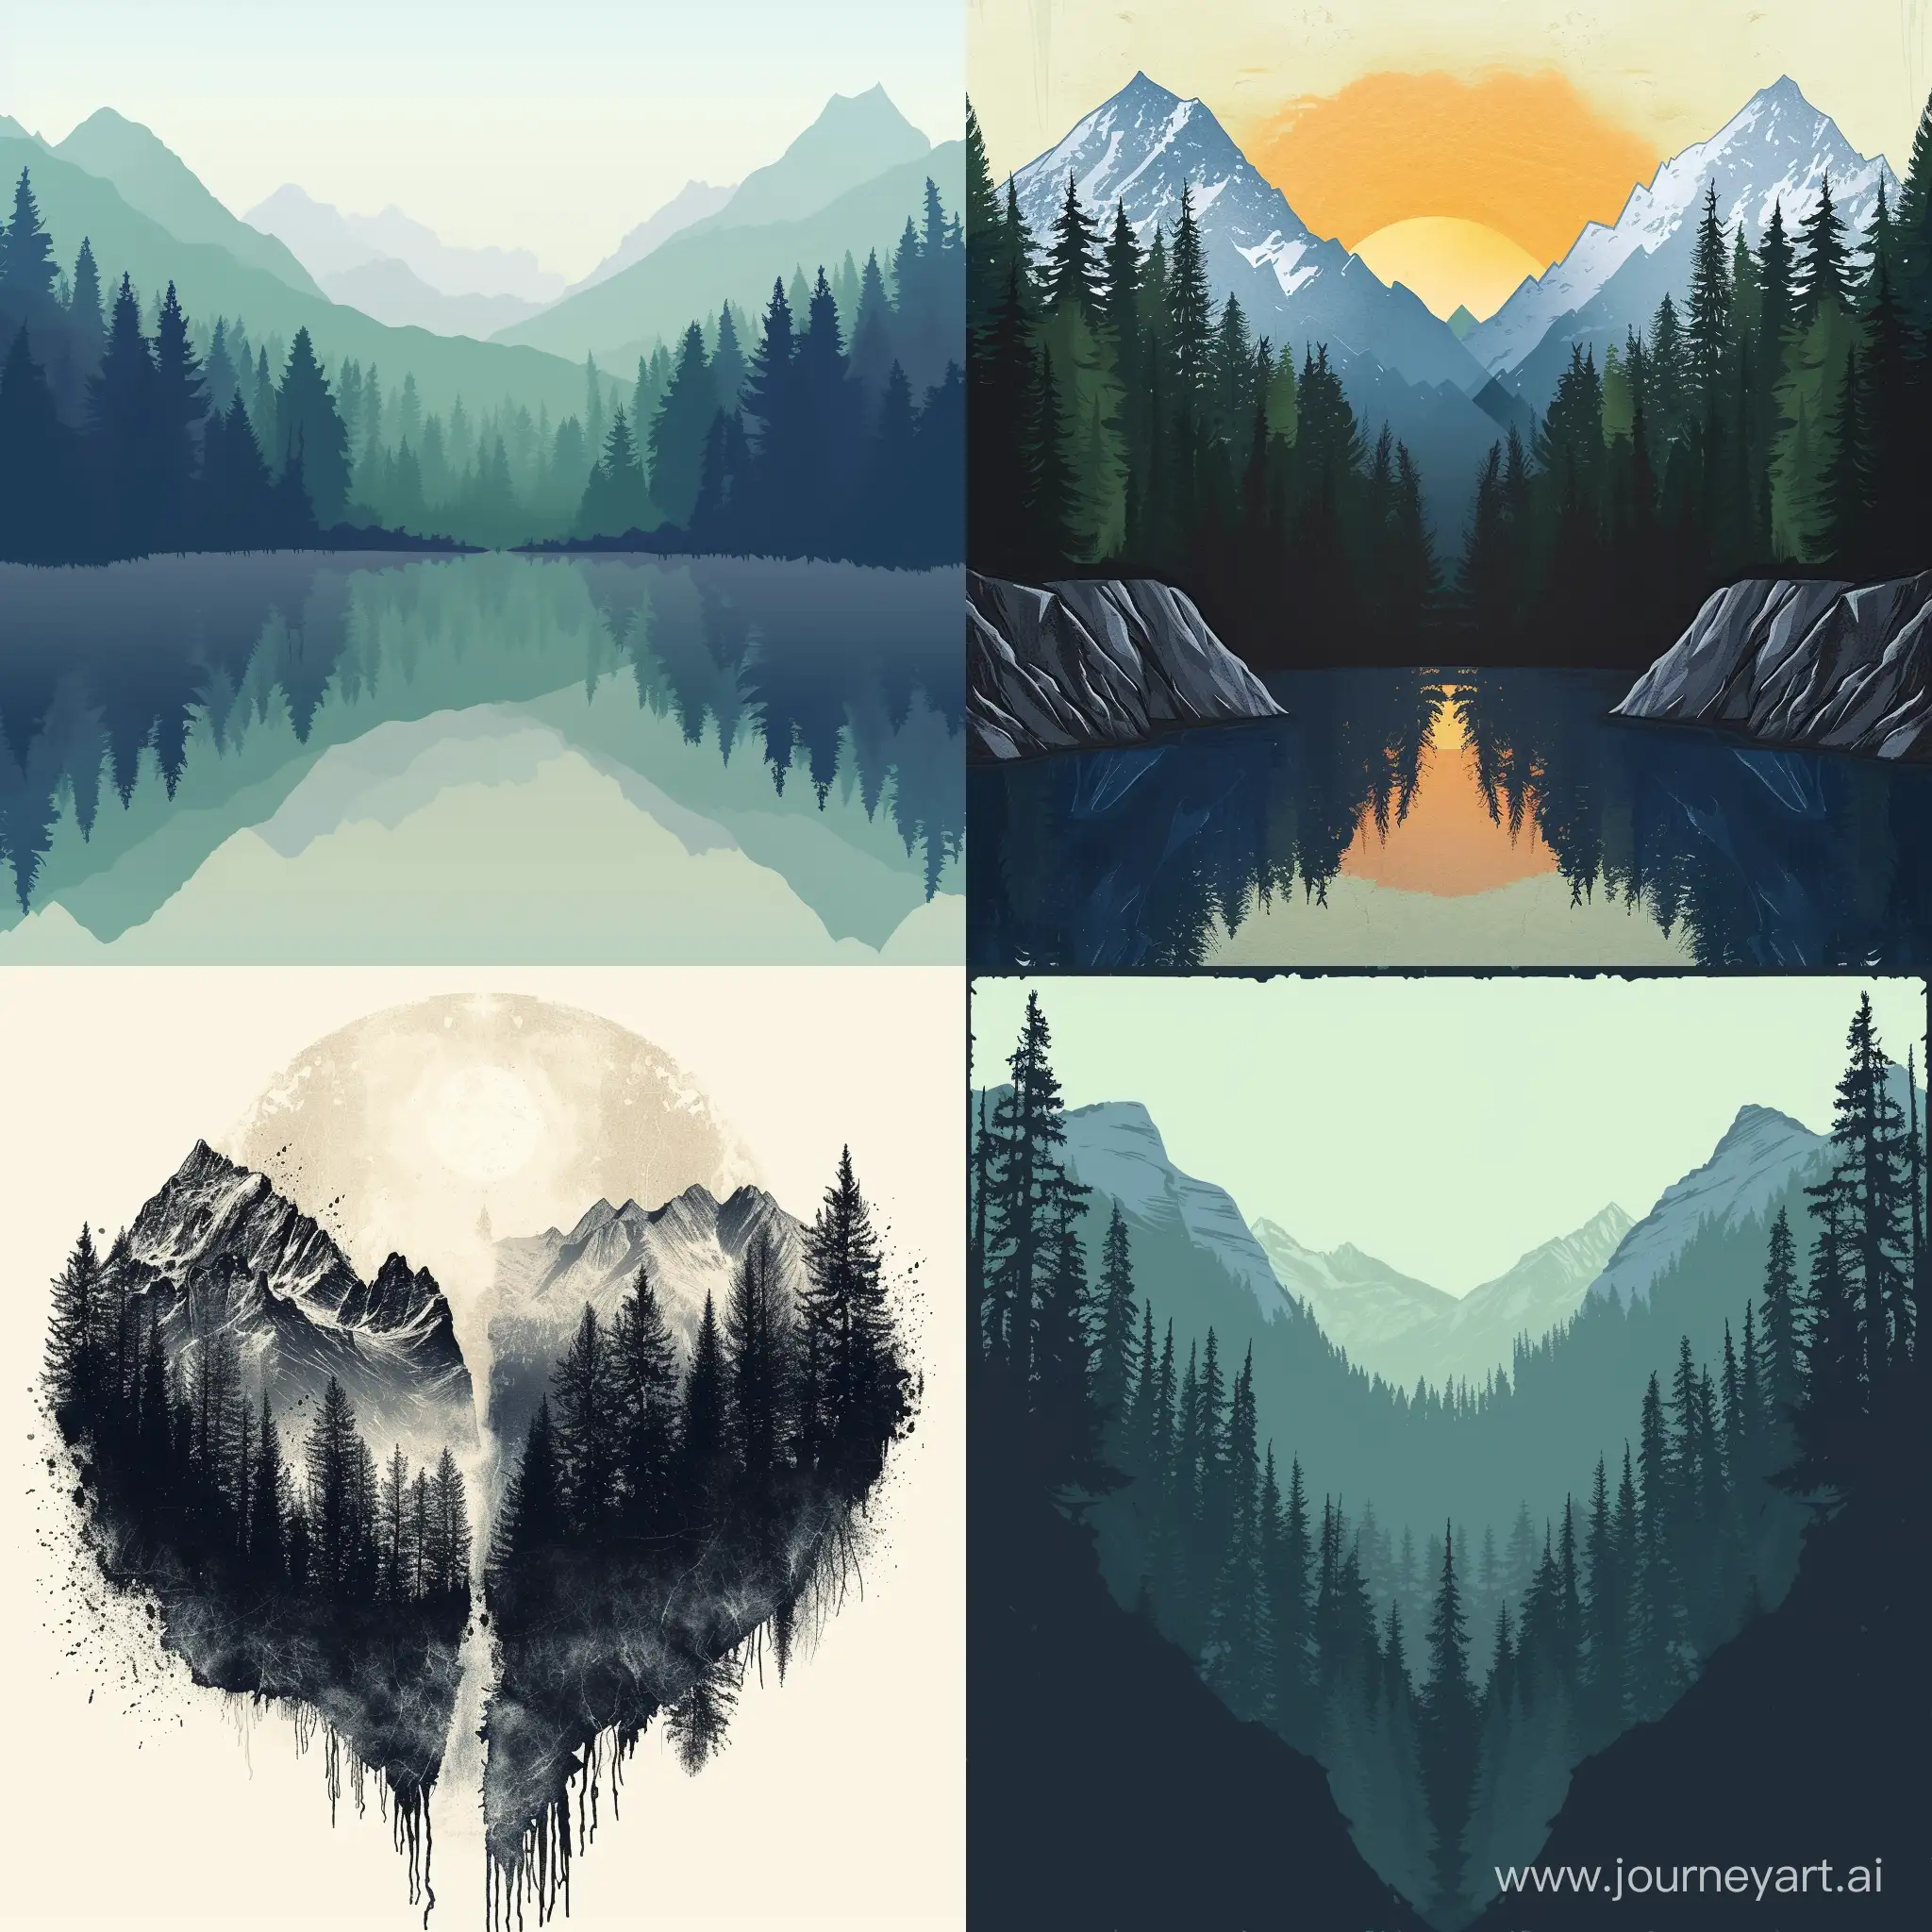 Создай картинку с лесом и горами по разные стороны.
